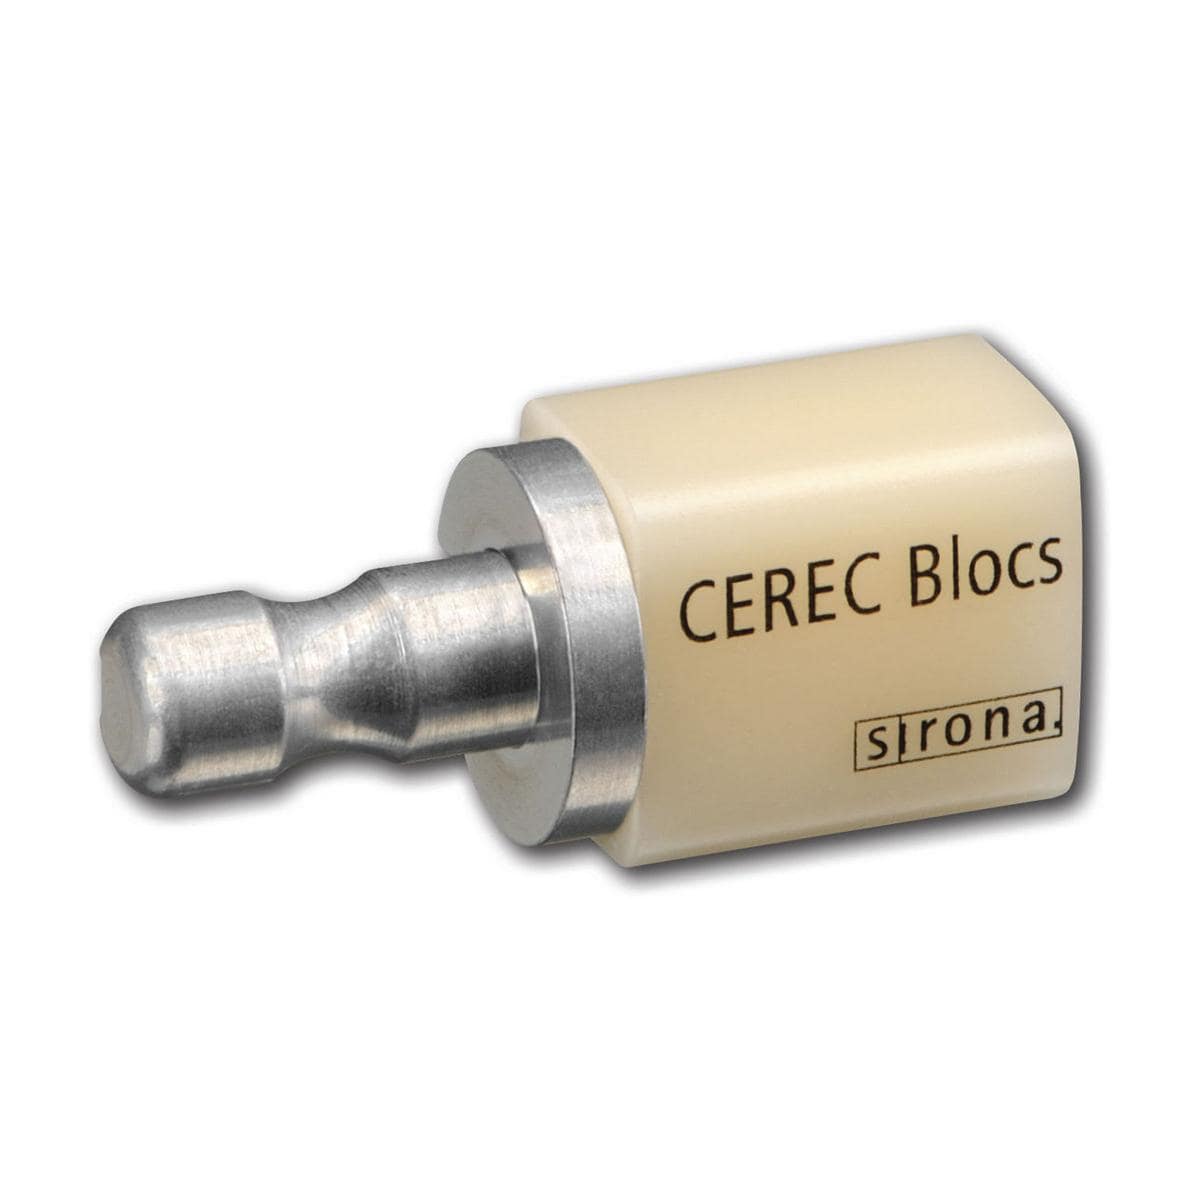 CEREC Blocs C 14 - C2C, Packung 8 Stück